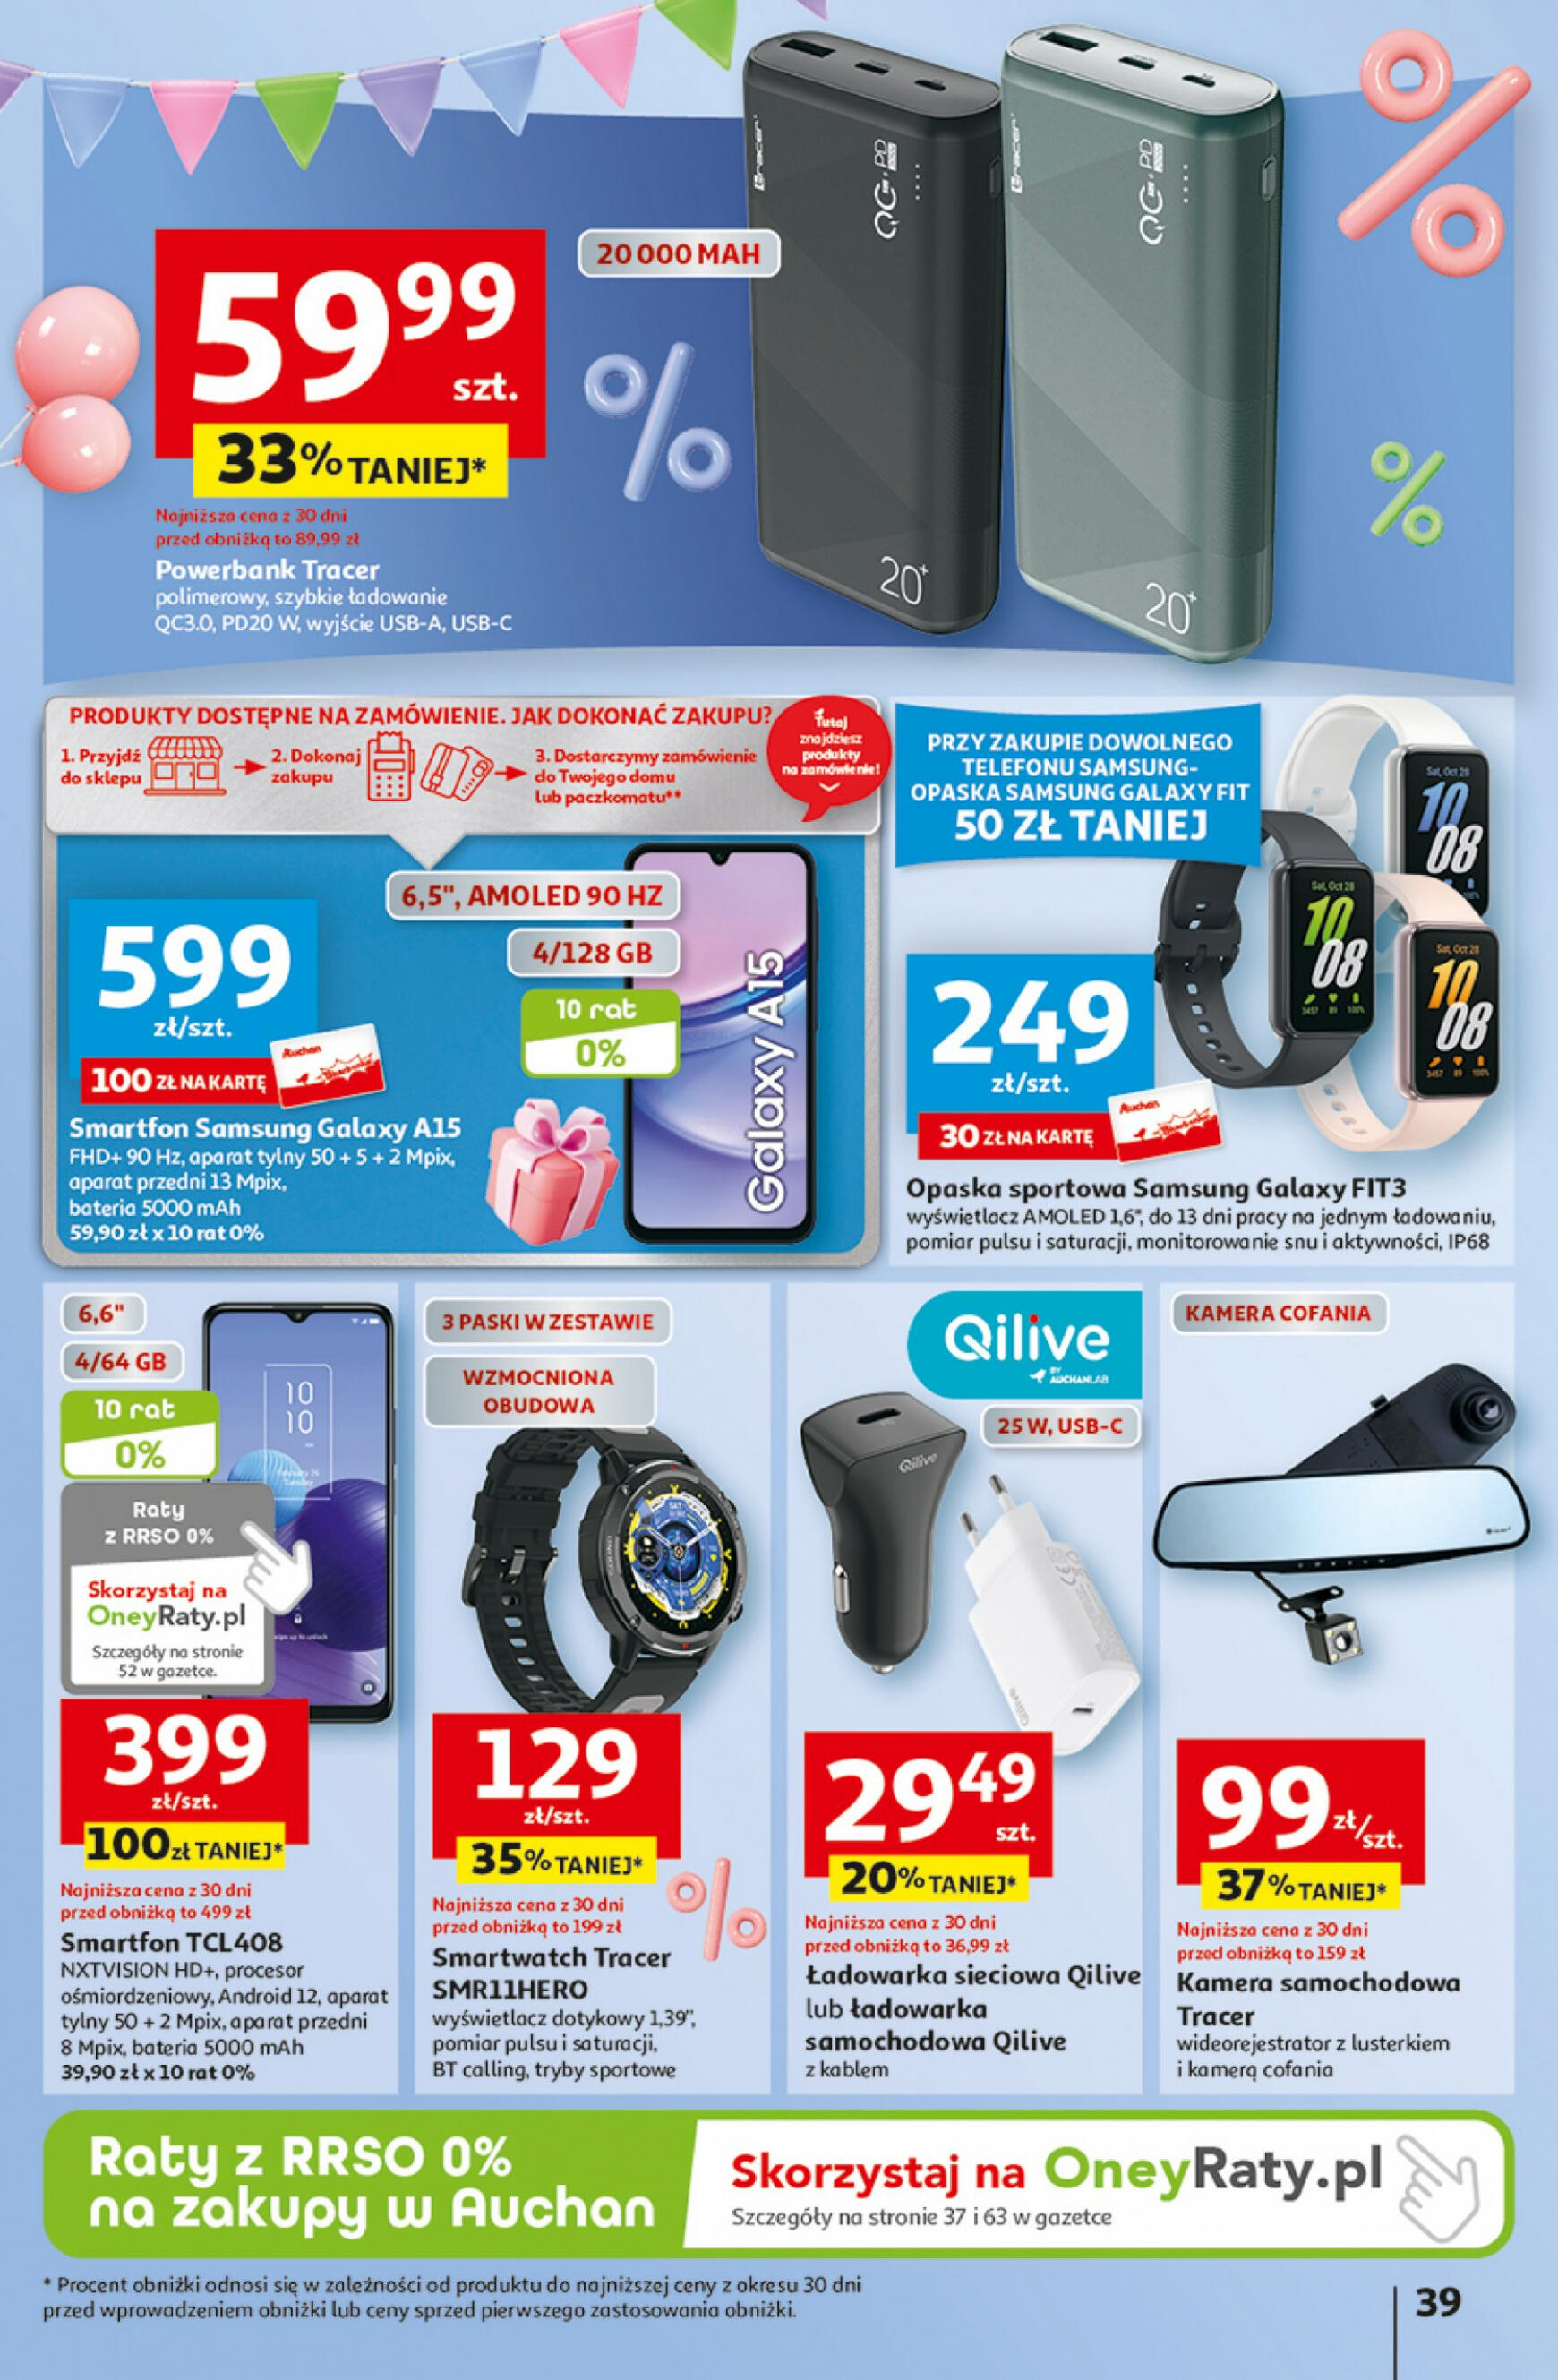 auchan - Hipermarket Auchan - Gazetka Jeszcze taniej na urodziny gazetka aktualna ważna od 25.04. - 30.04. - page: 39